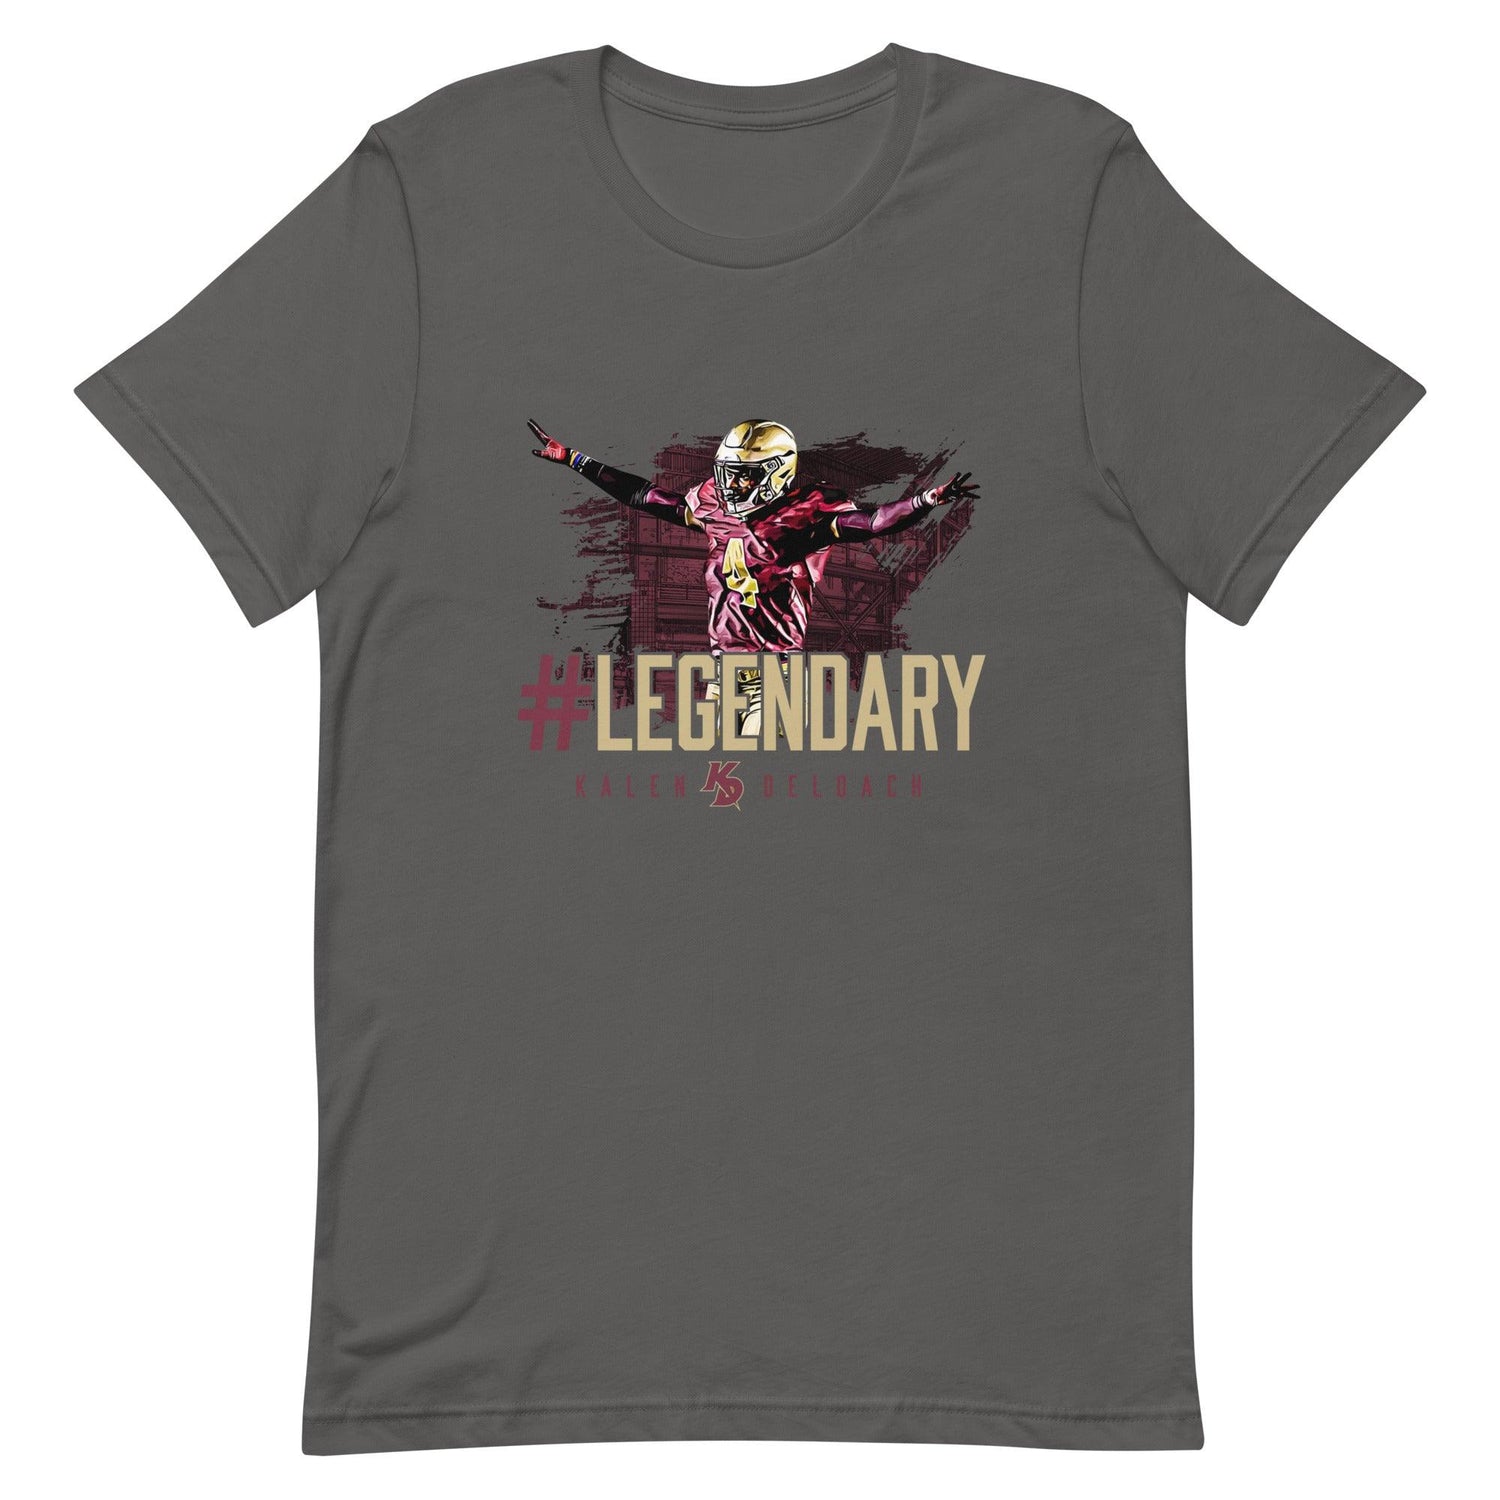 Kalen Deloach "#Legendary" t-shirt - Fan Arch